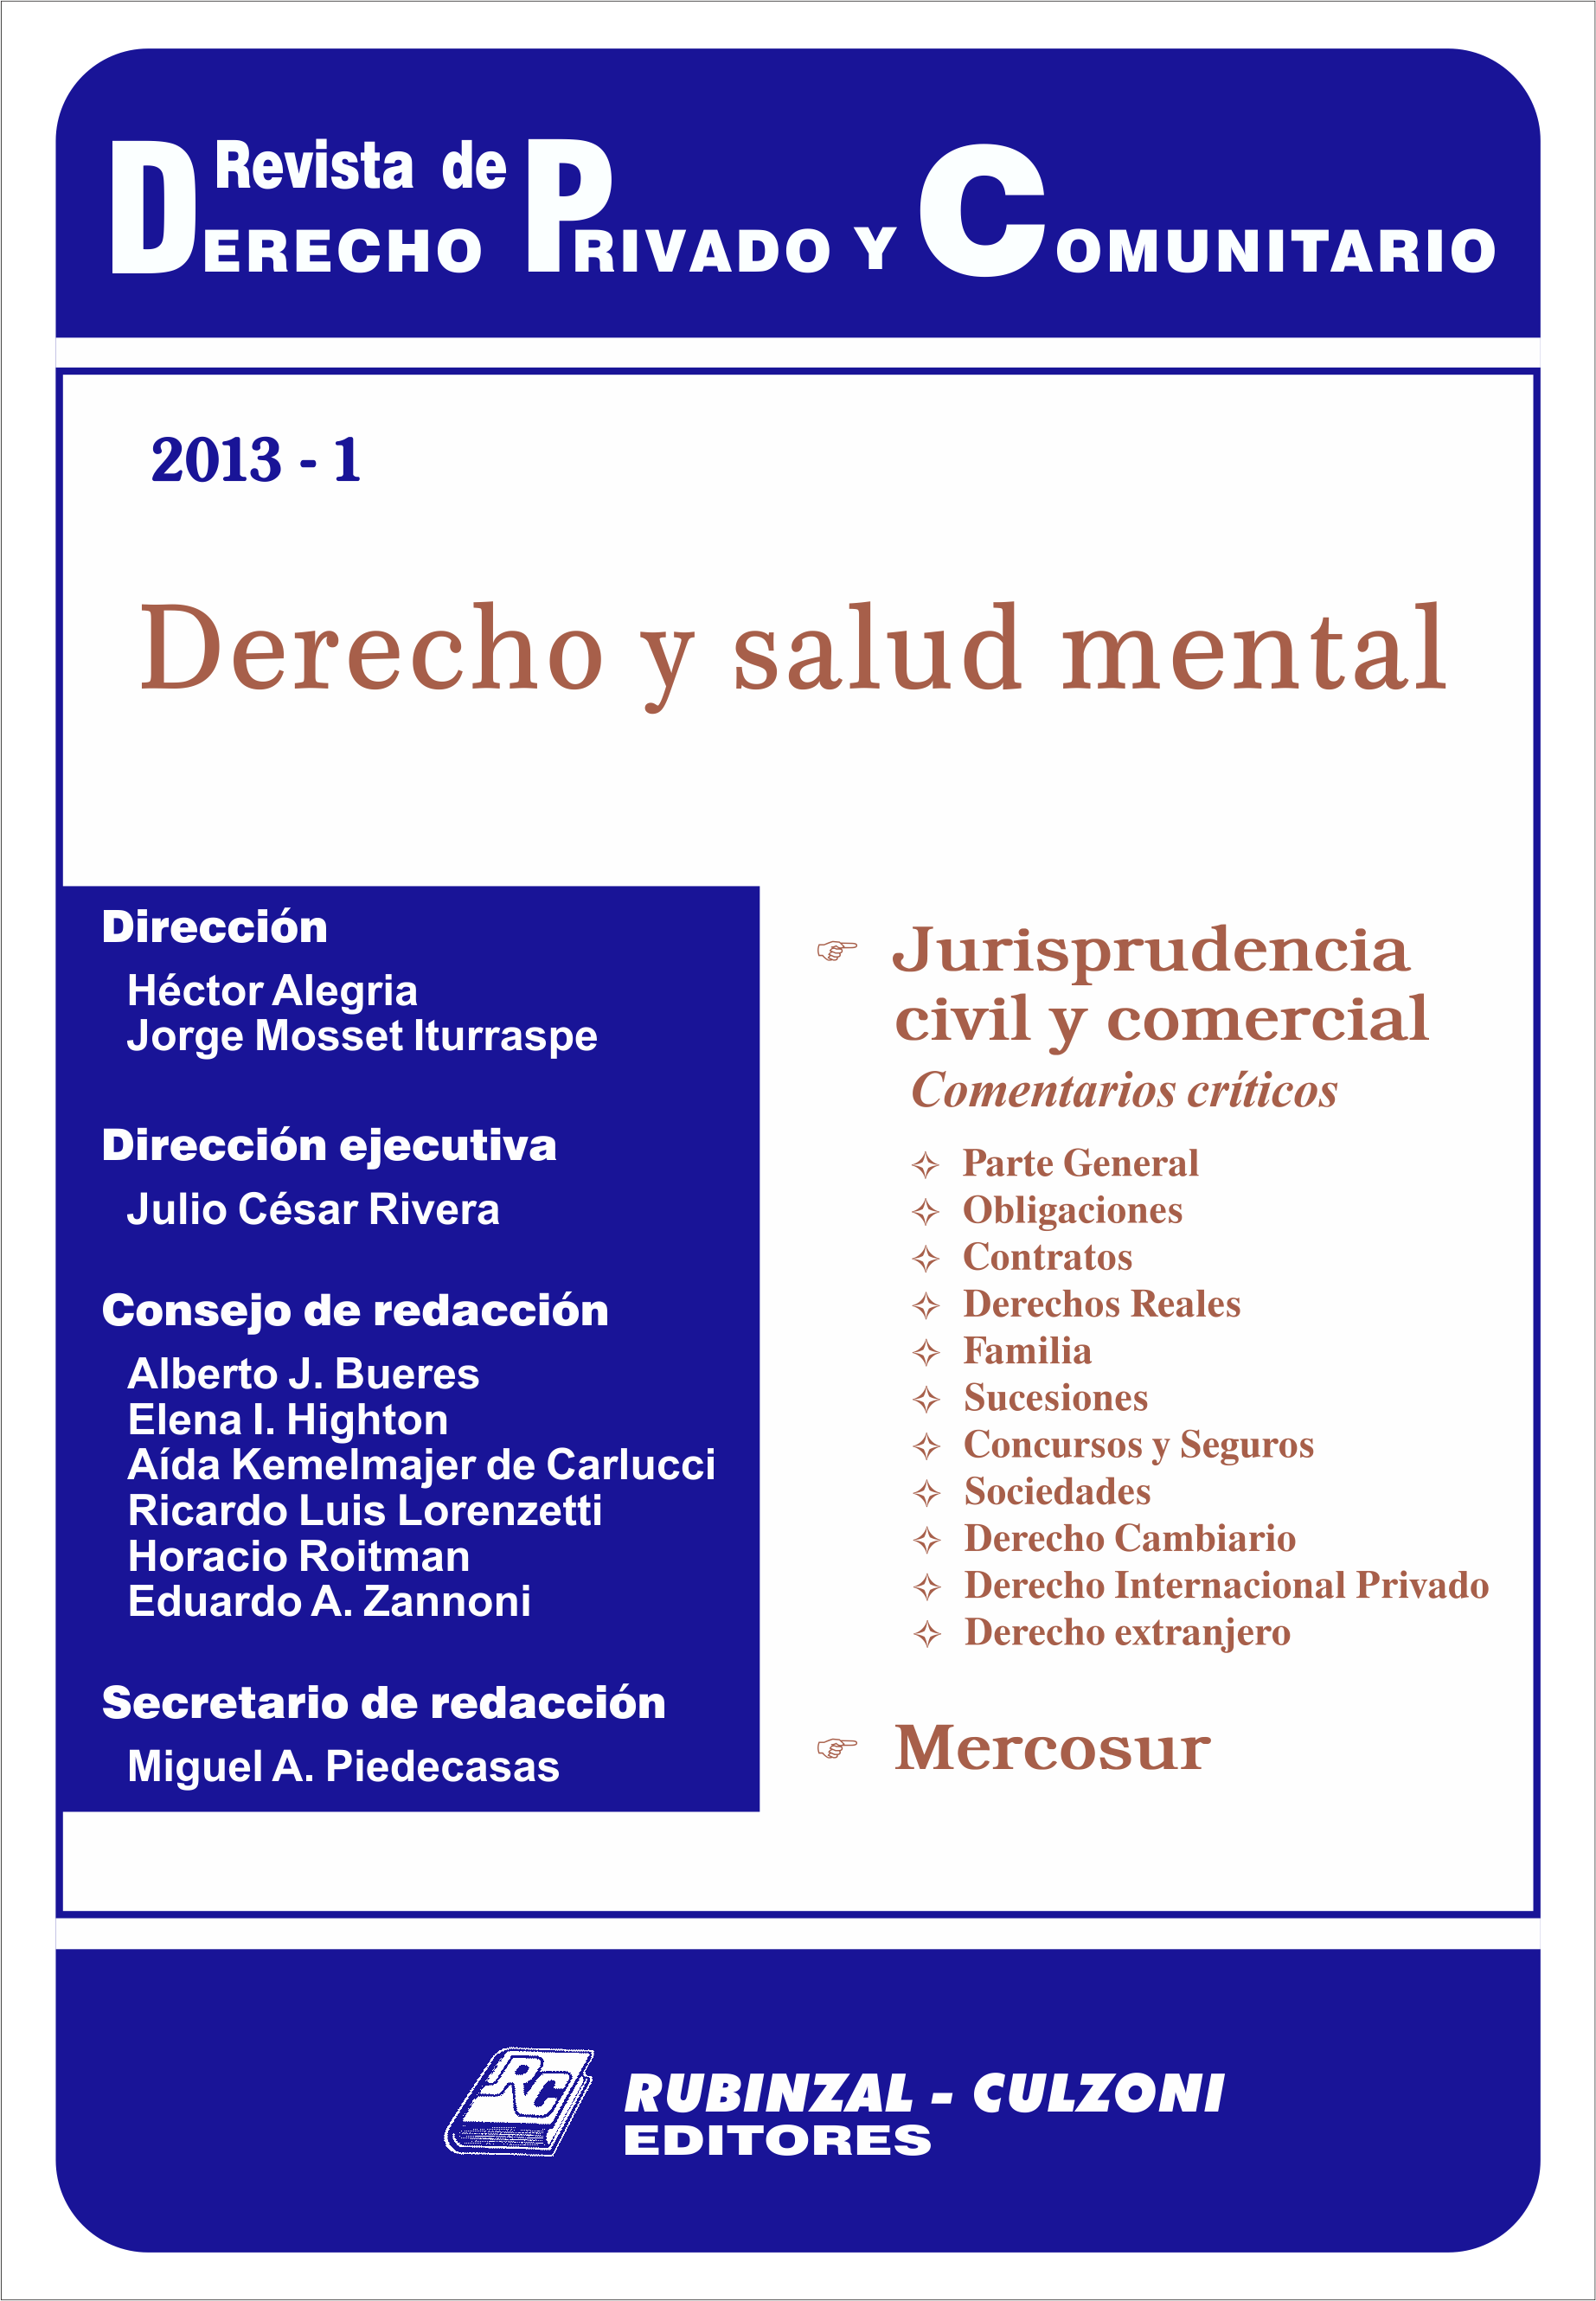 Revista de Derecho Privado y Comunitario - Derecho y salud mental